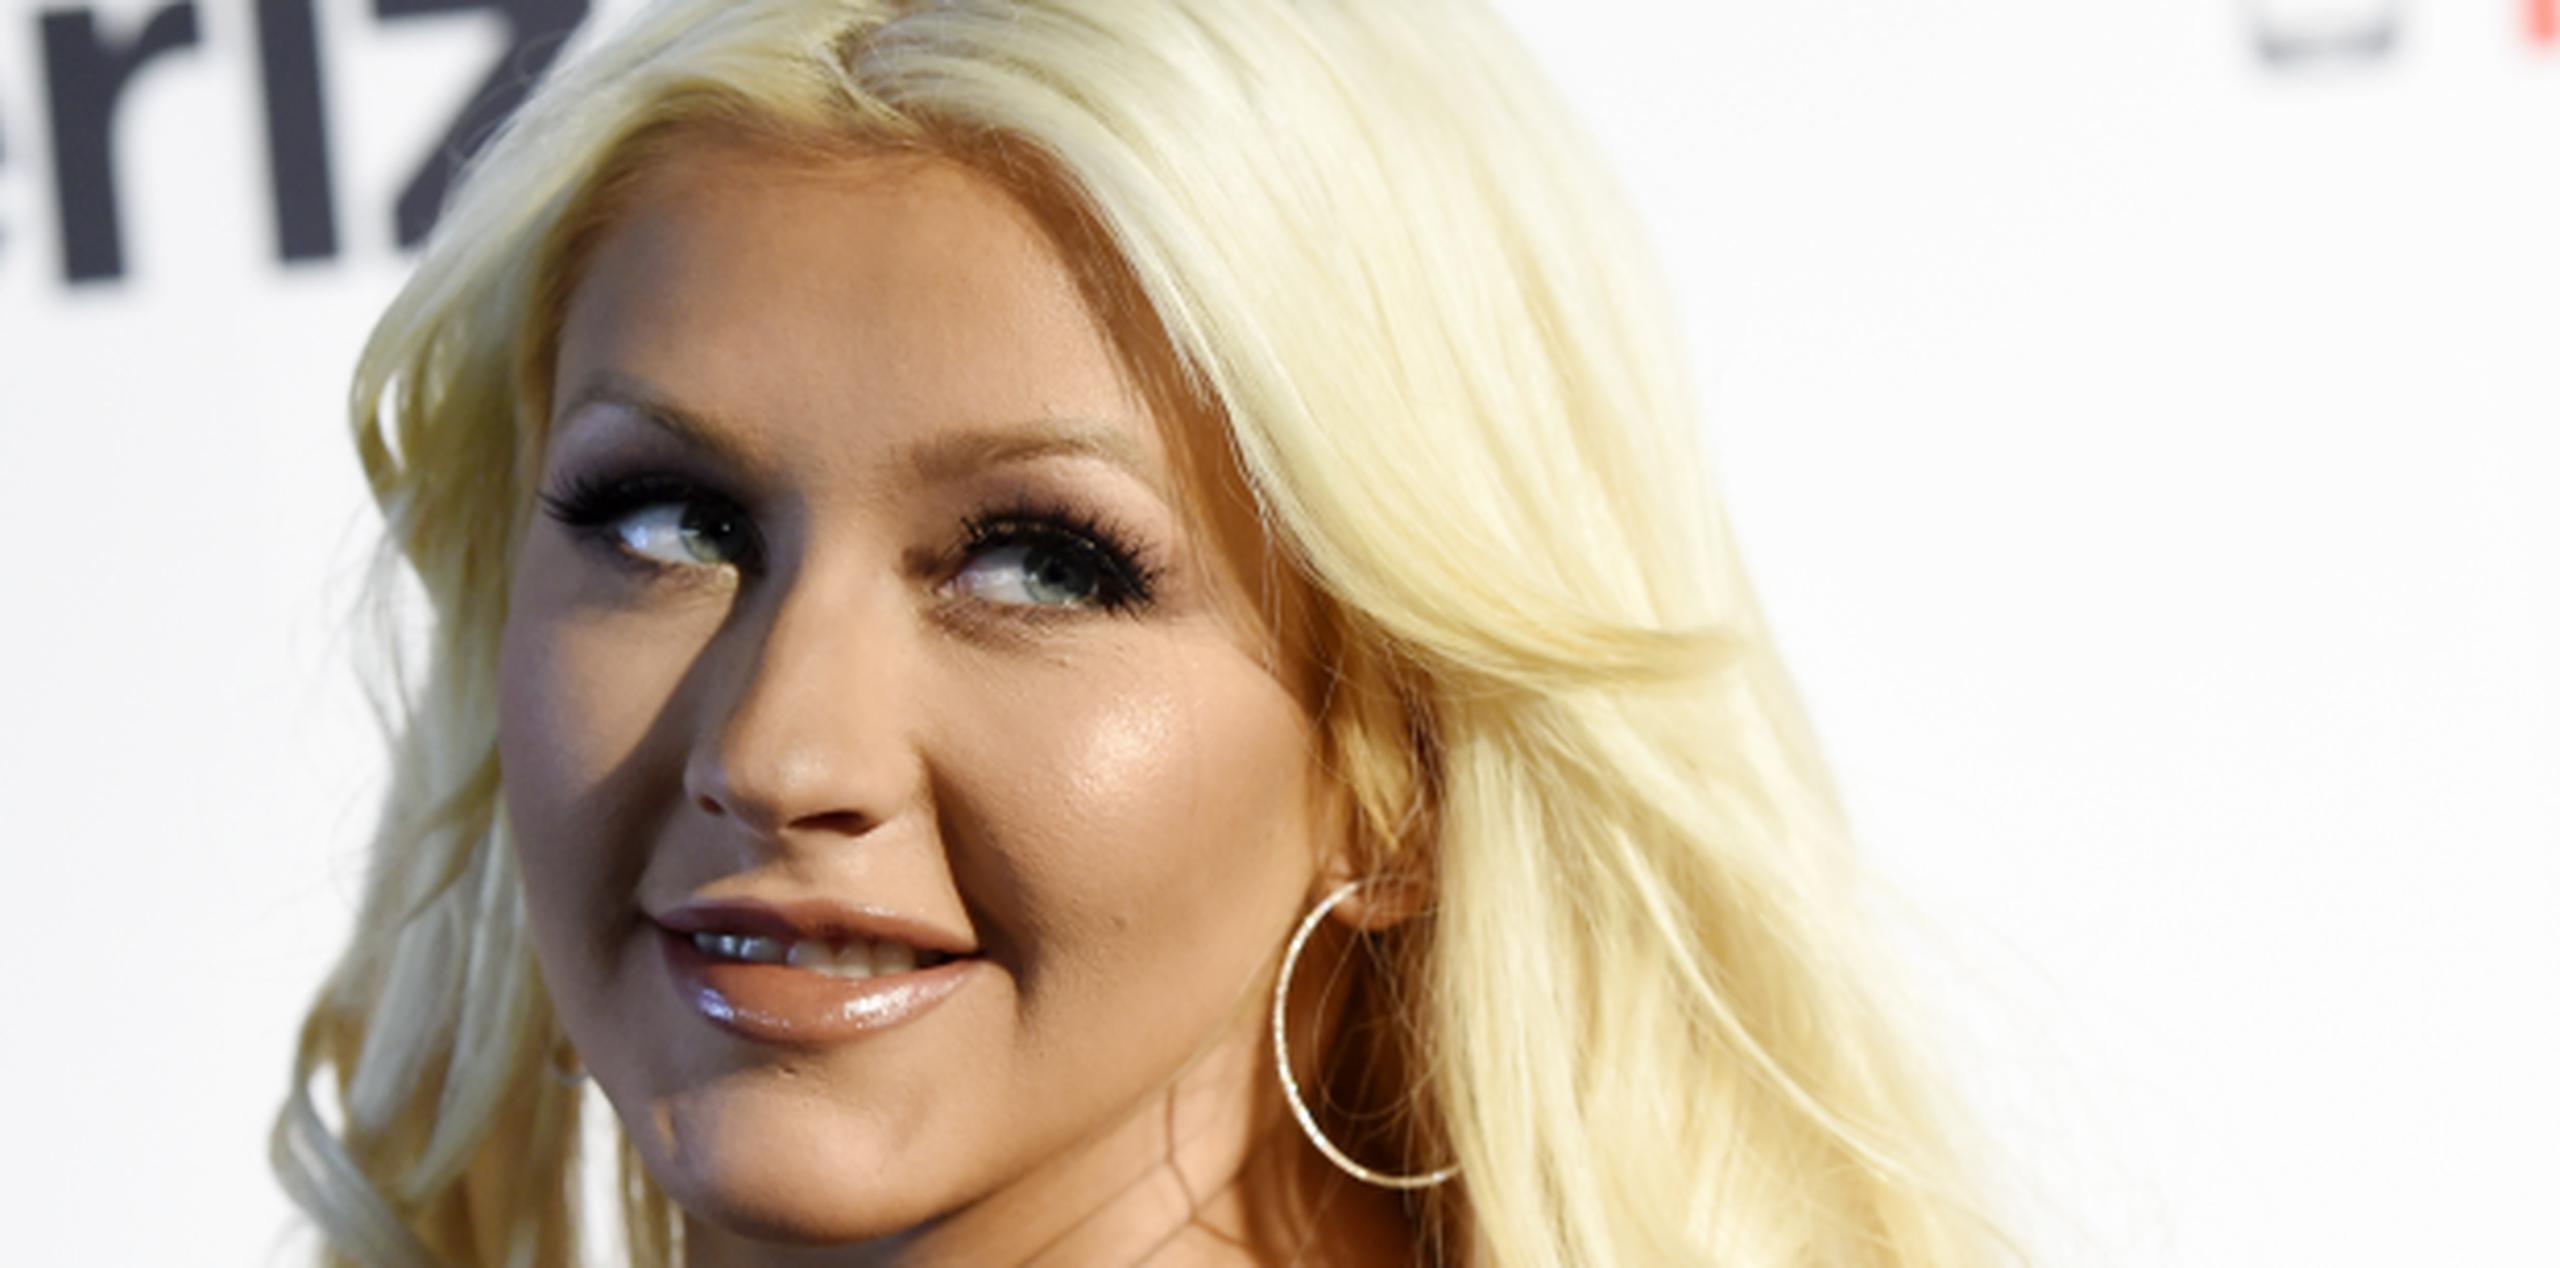 Christina Aguilera se encuentra grabando la 10ma temporada de "The Voice", que se transmitirá el próximo año por la cadena NBC. (Prensa Asociada)